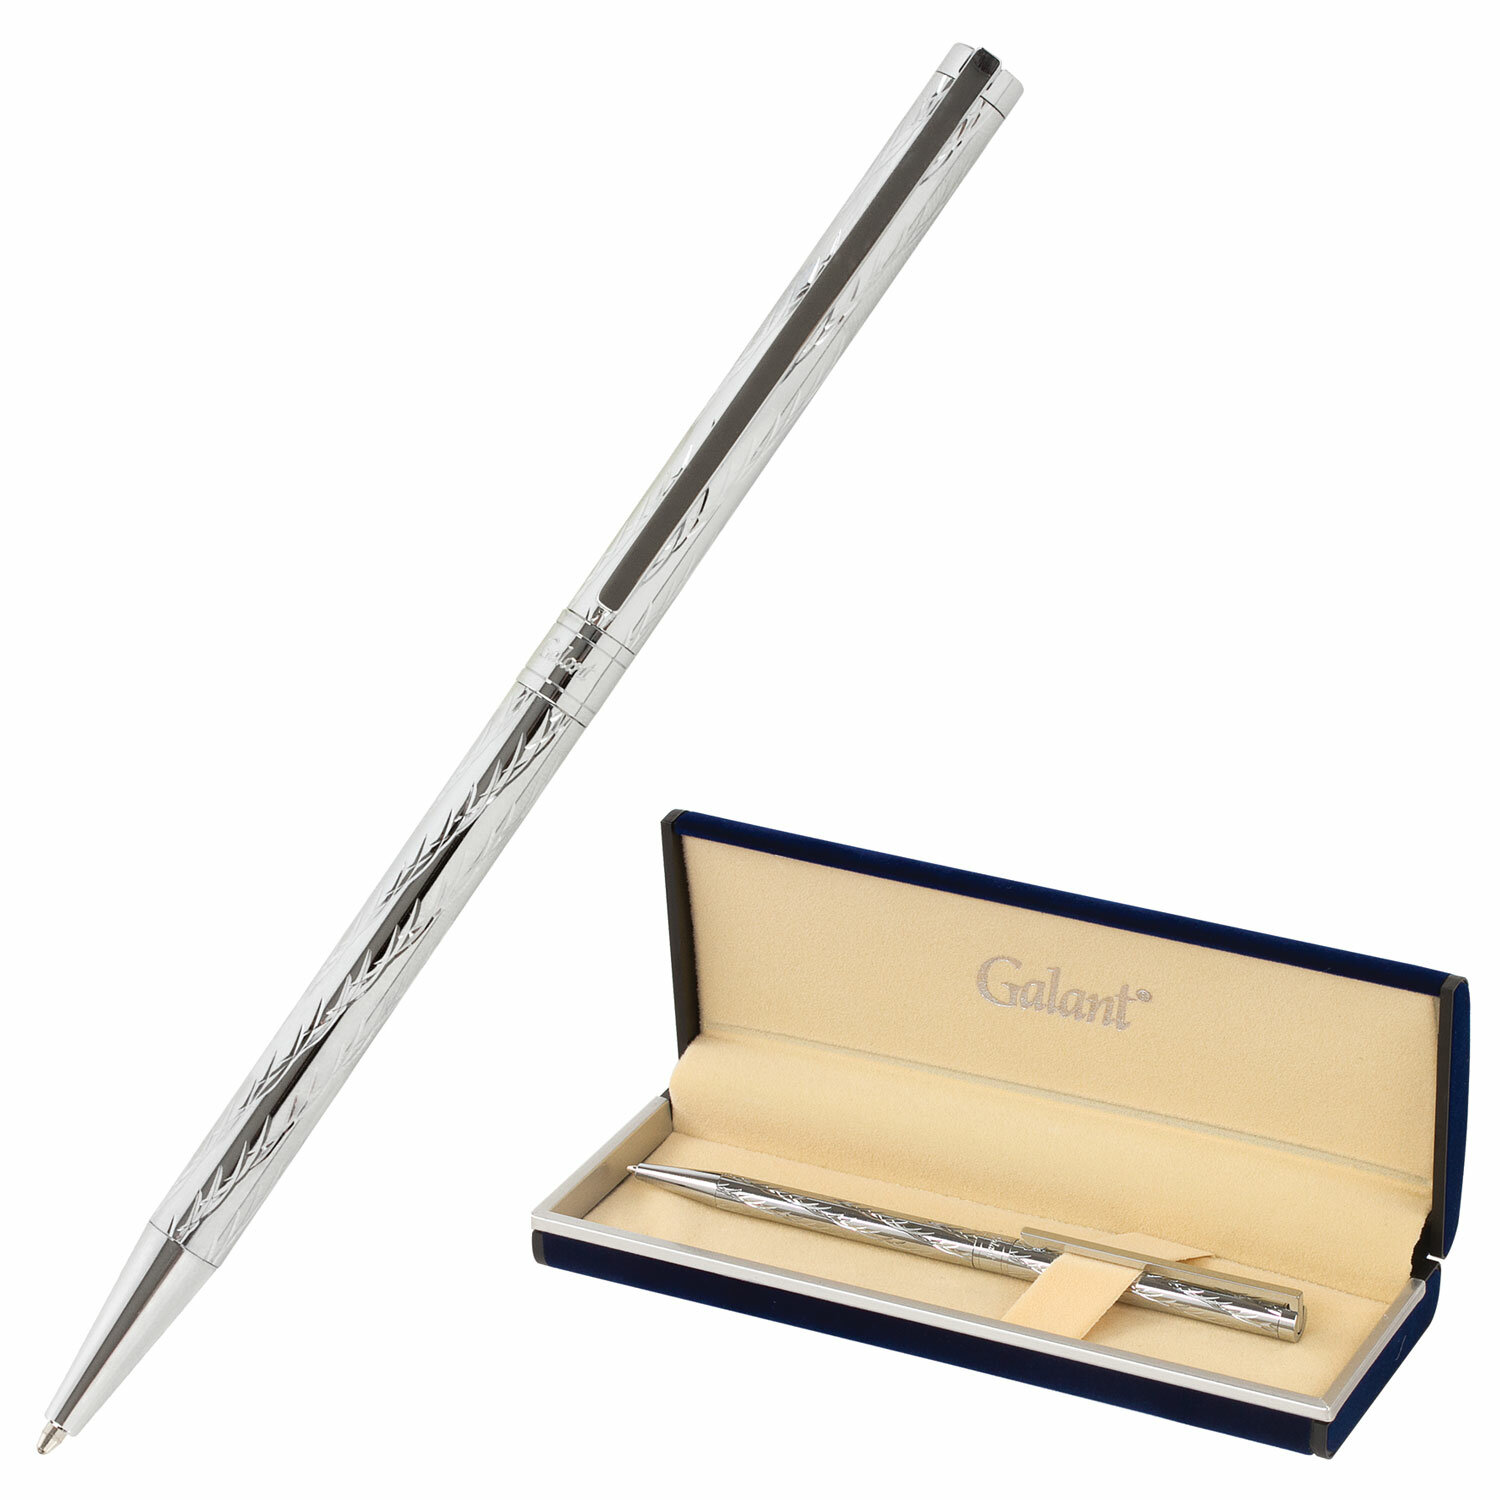 Подарочная шариковая ручка Galant 143527 Astron Silver корпус серебристый 0,7 мм синяя